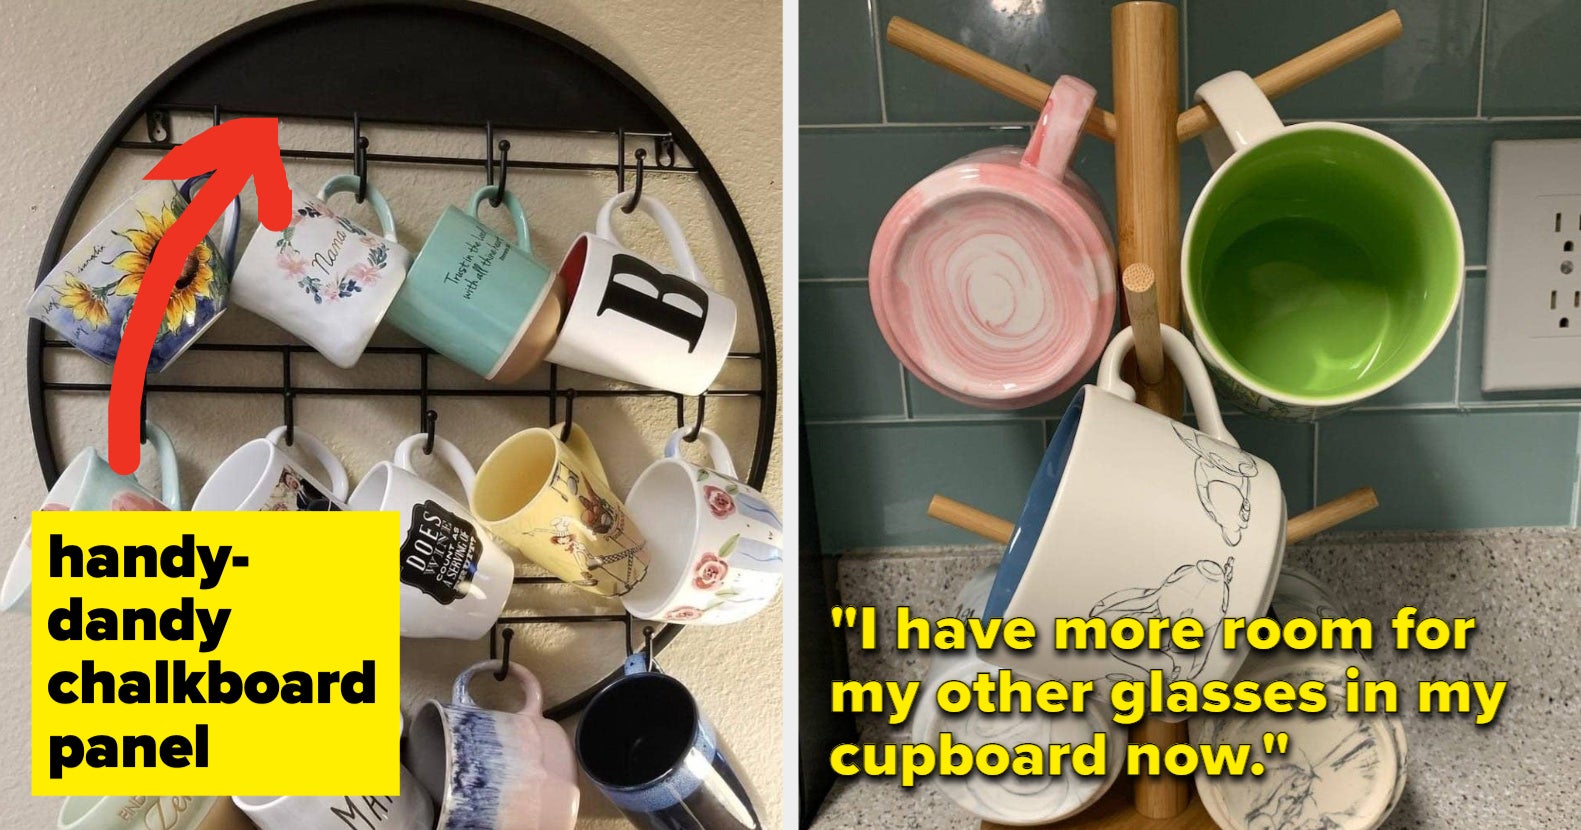 15 Mug Holders To Organize Your Mug Collection